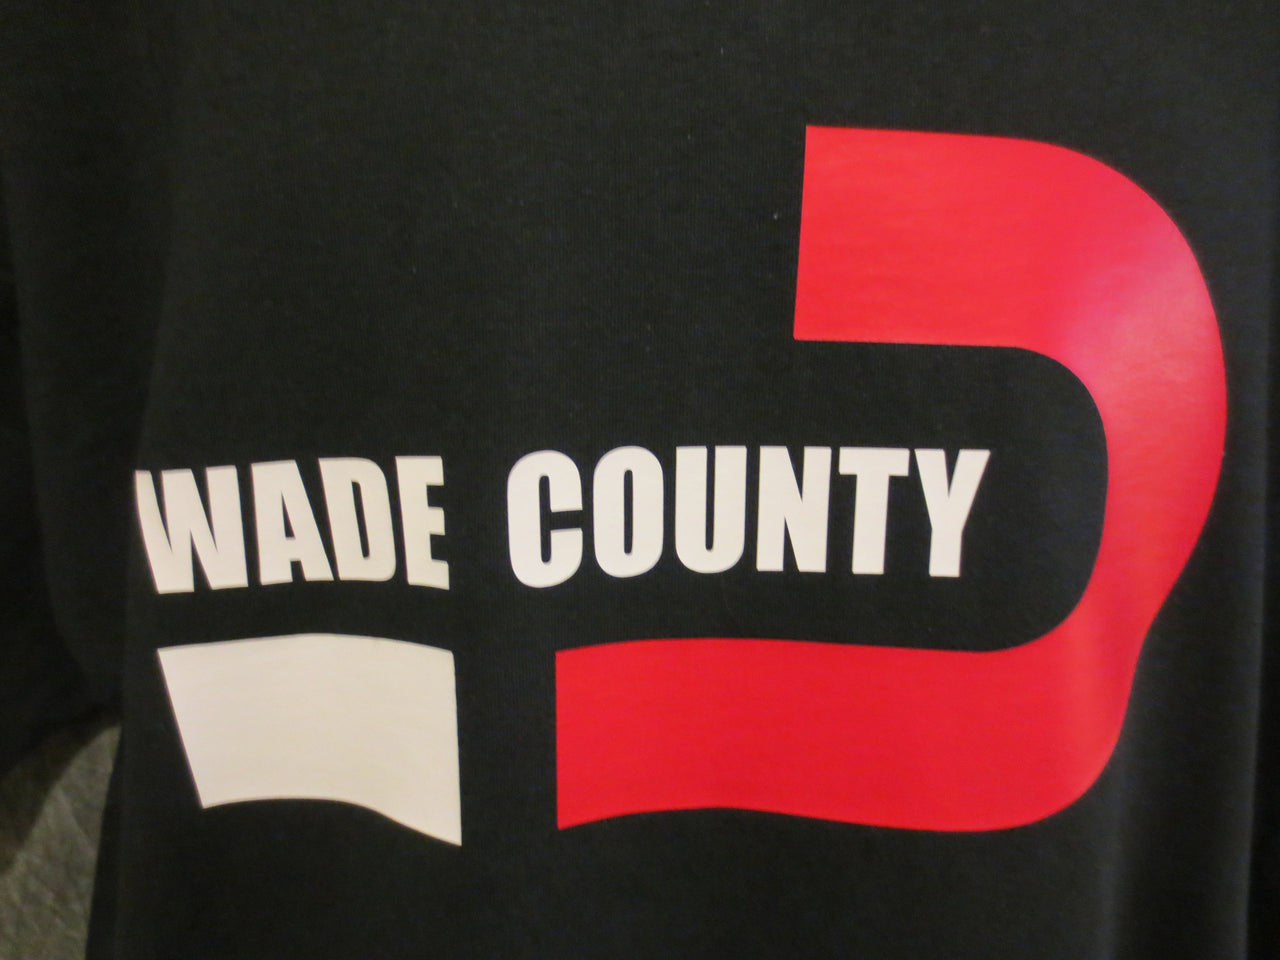 Miami Heat "Wade County" Dwyane Wade Black Tshirt - TshirtNow.net - 3